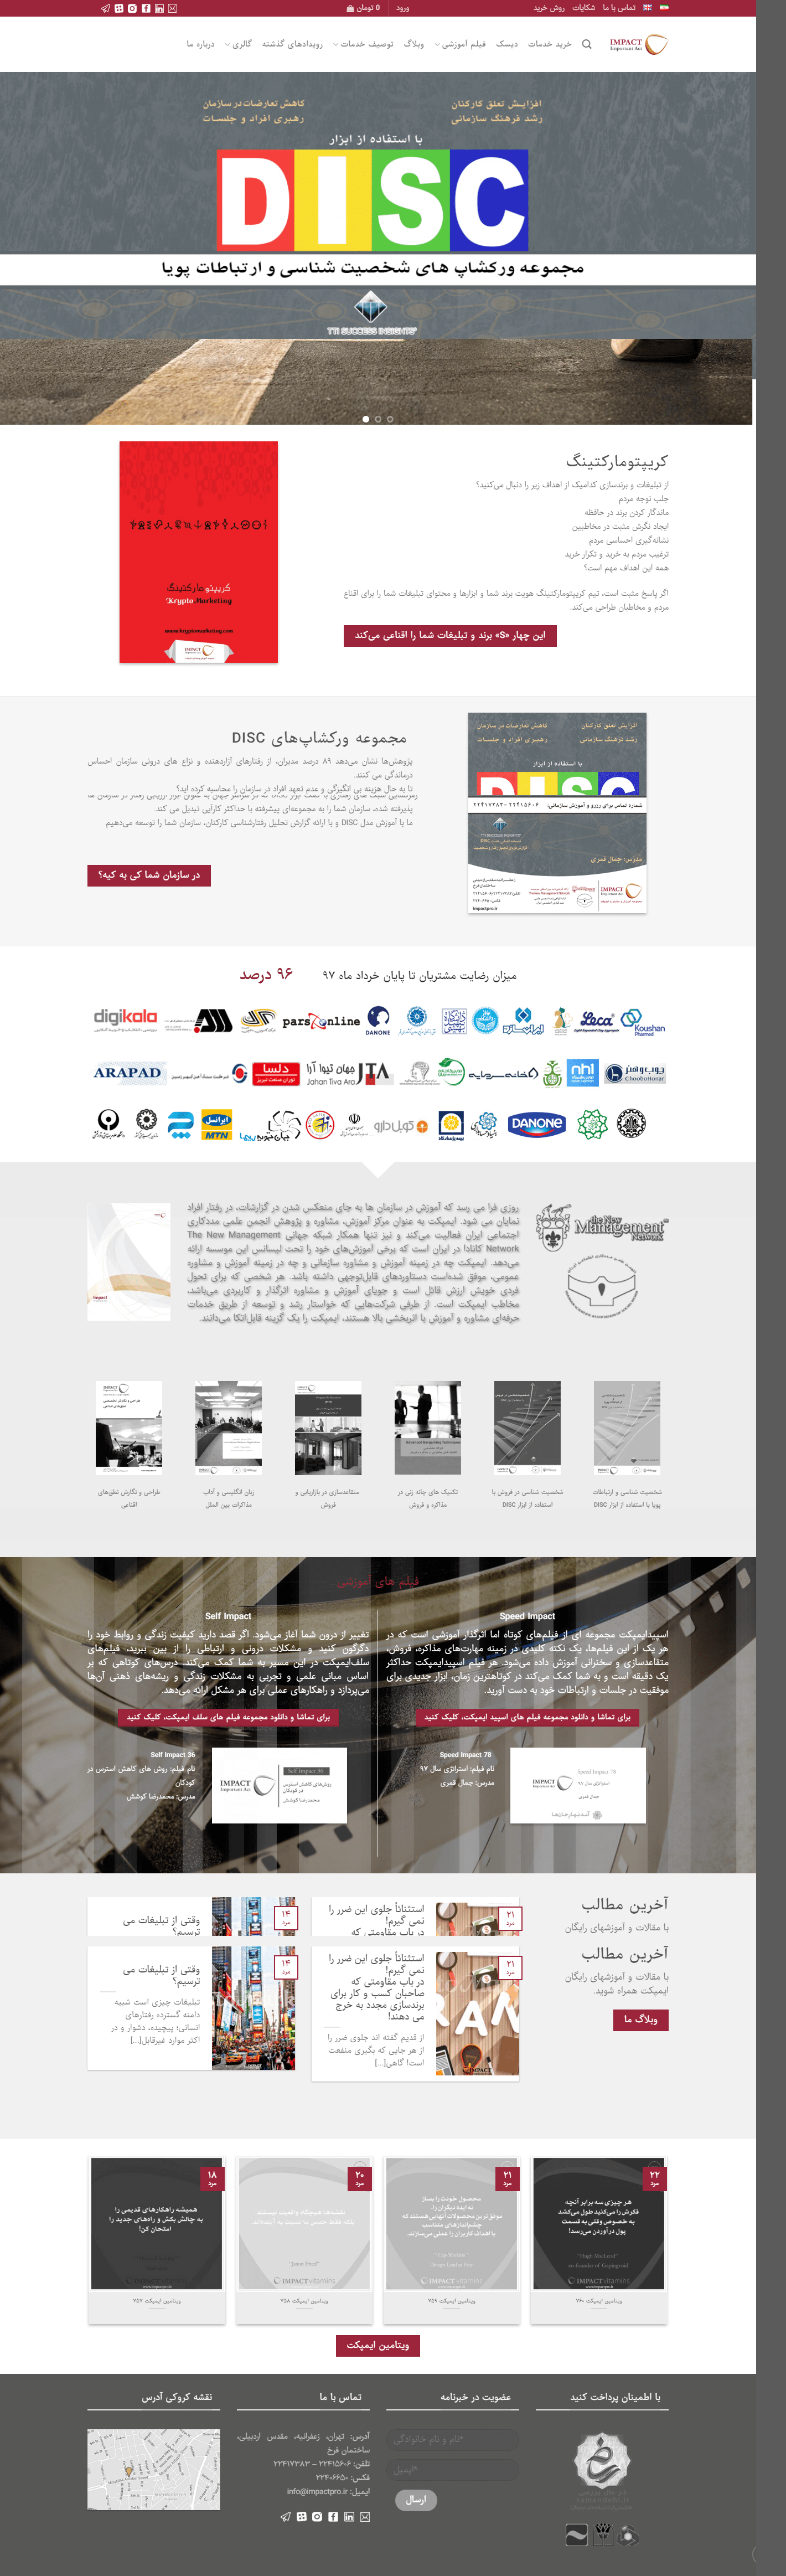 طراحی سایت شرکتی ایمپکت پرو